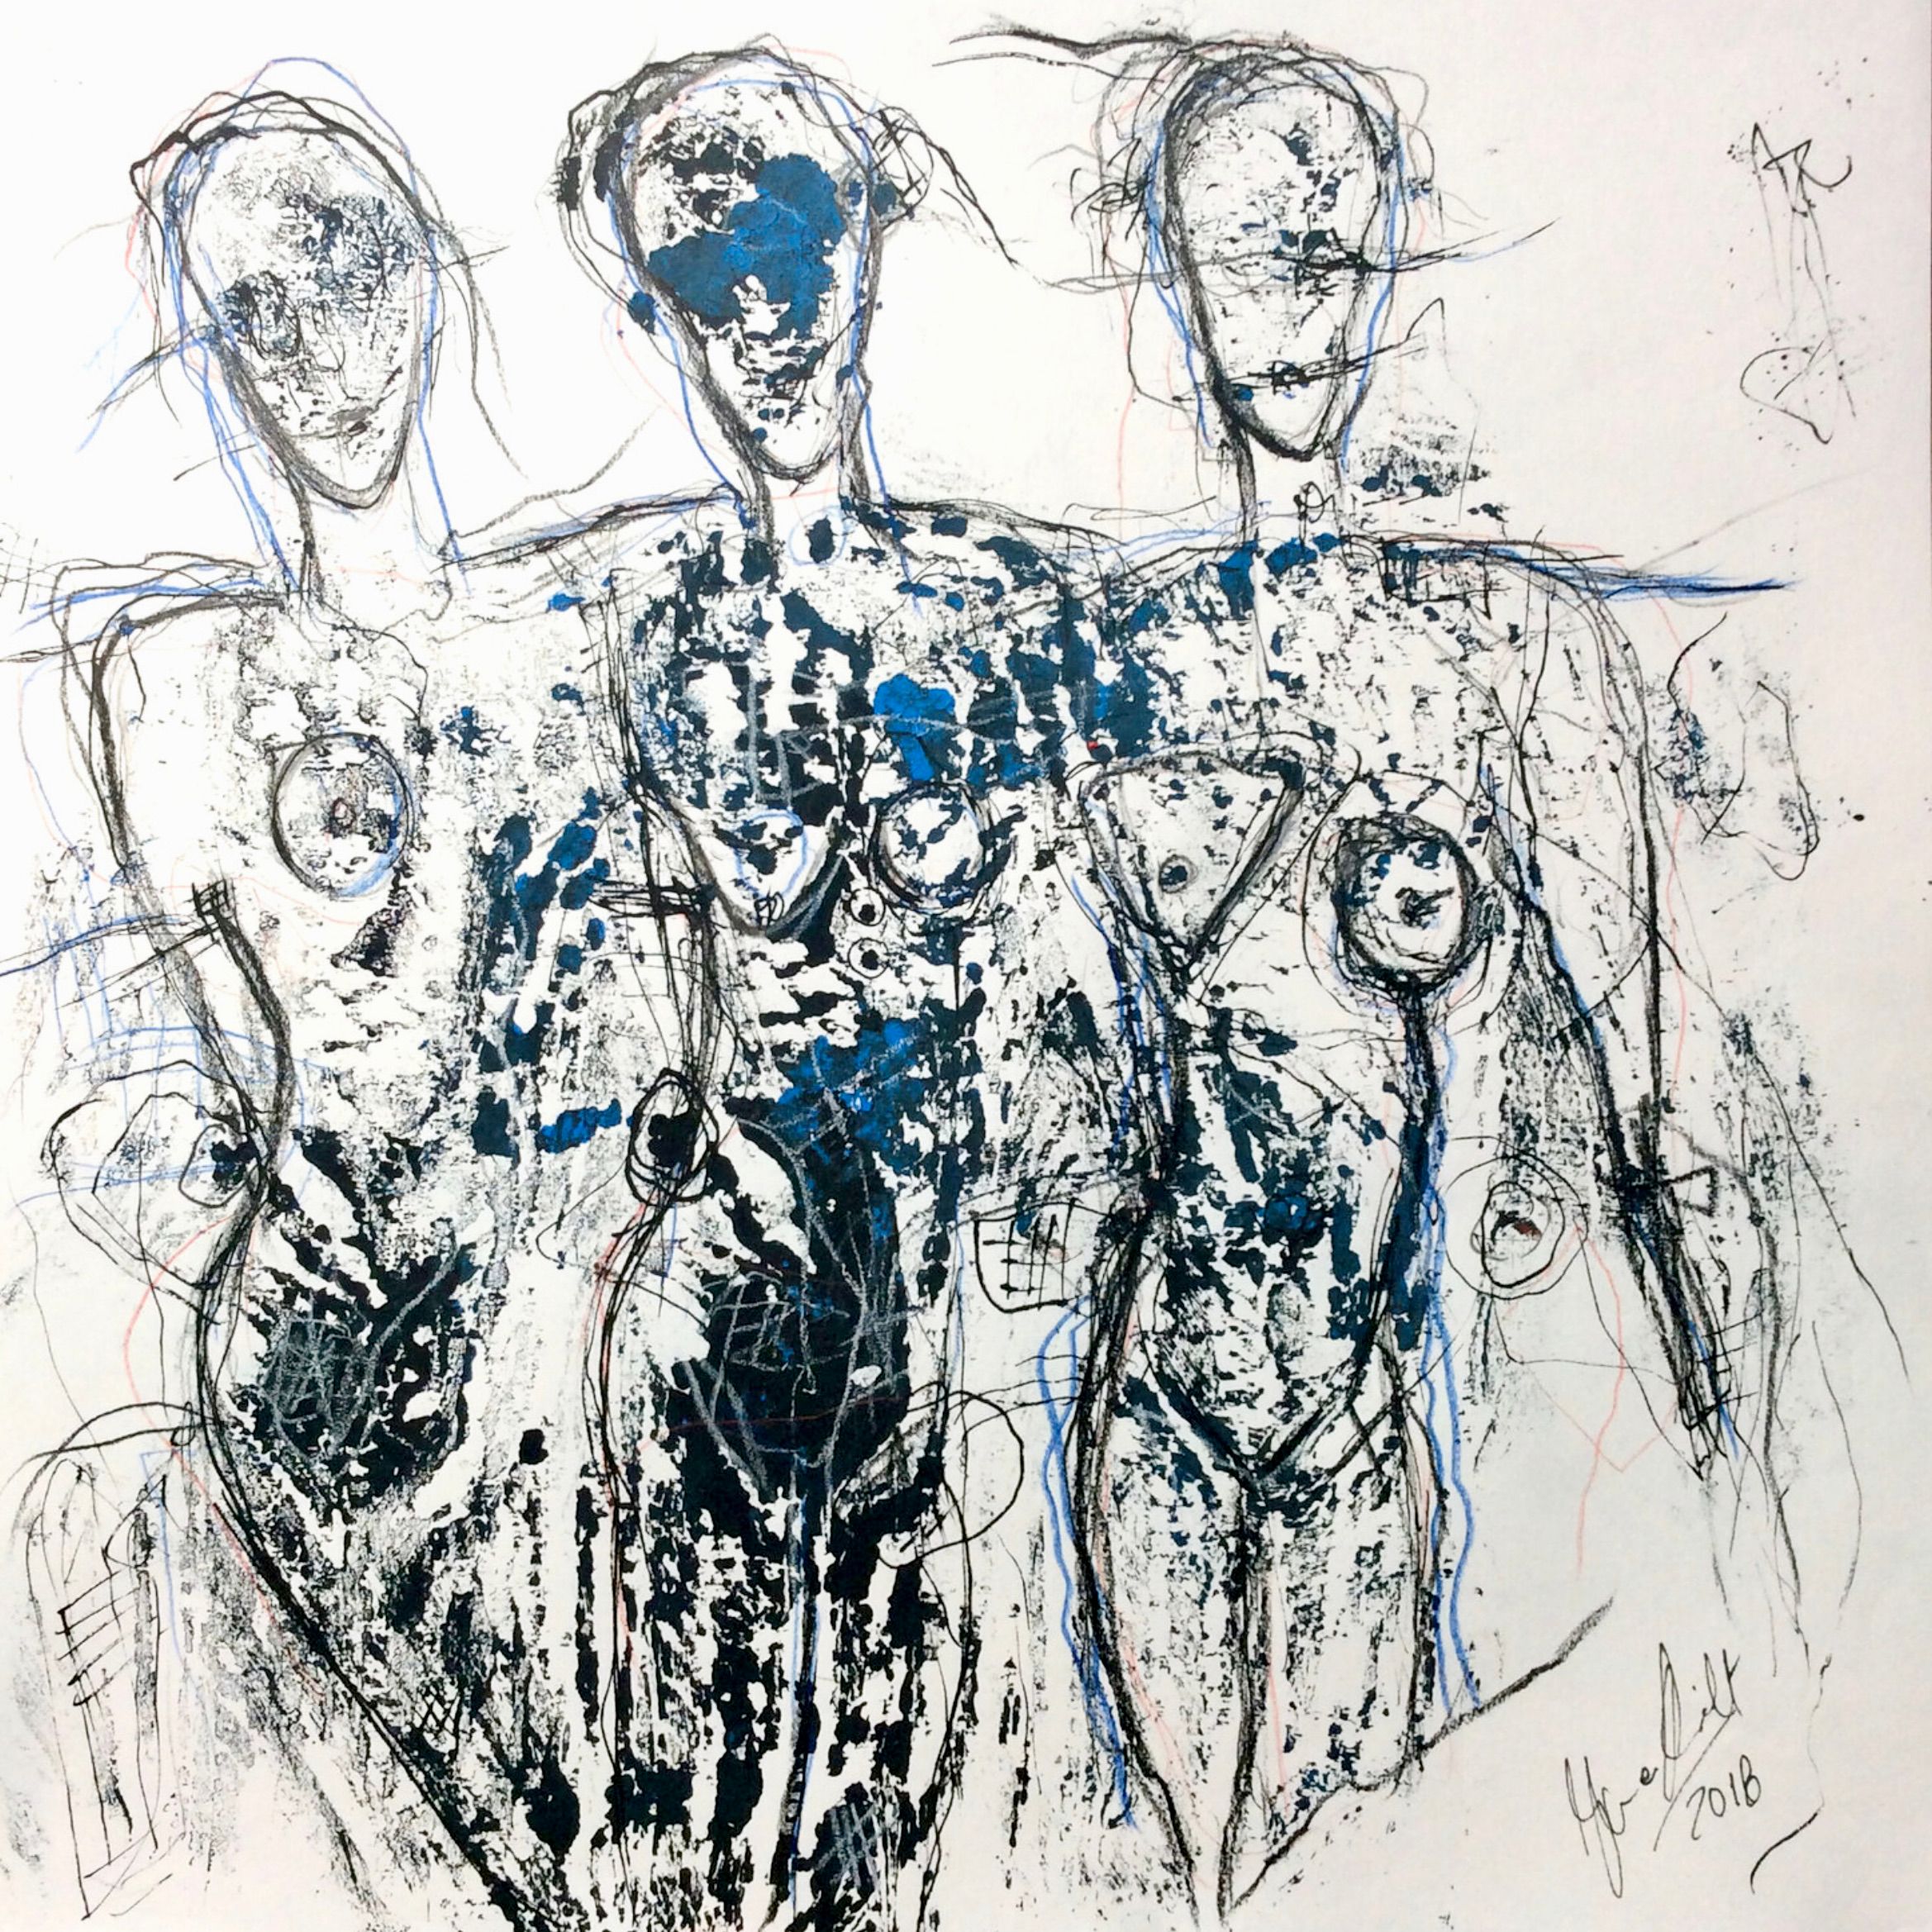 Le portrait/dessin expressif semi-abstrait "Monoprint Nr. 27" d'Ilona Schmidt montre 3 corps de femmes nues. Les couleurs noir, blanc, avec des touches de bleu dominent dans ce tableau.